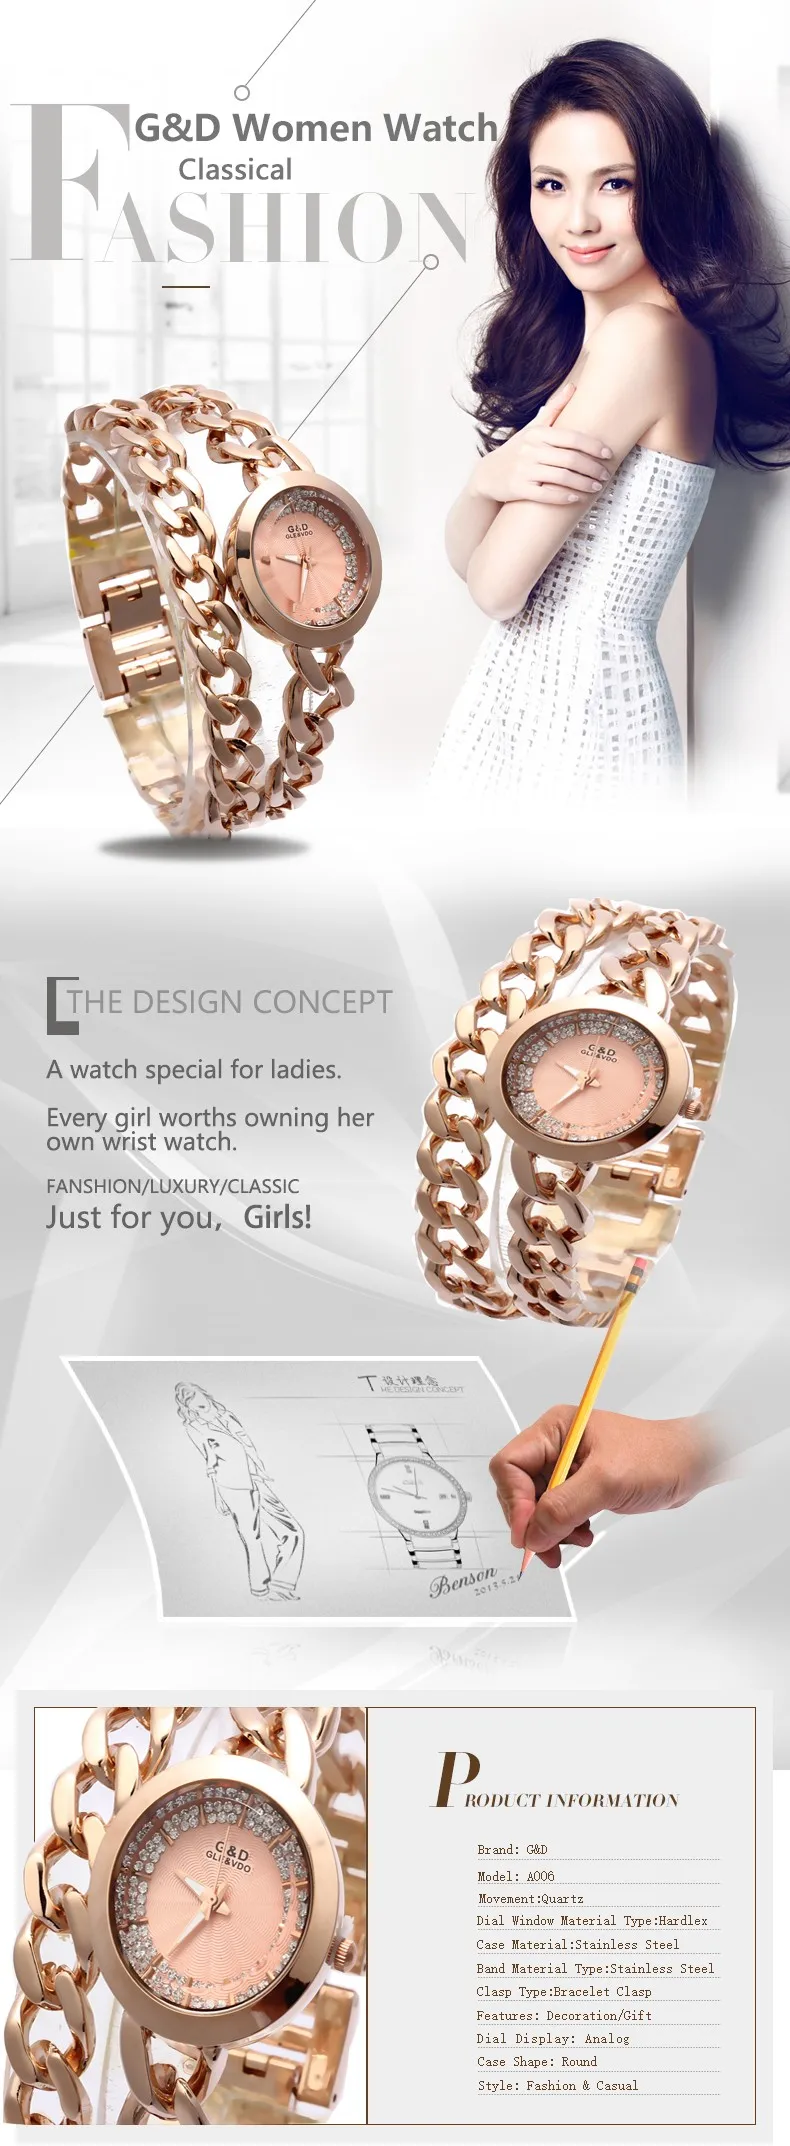 Топ люксовый бренд Для женщин браслет часы Для женщин кварцевые наручные часы женская одежда часы relogio feminino часы розовое золото